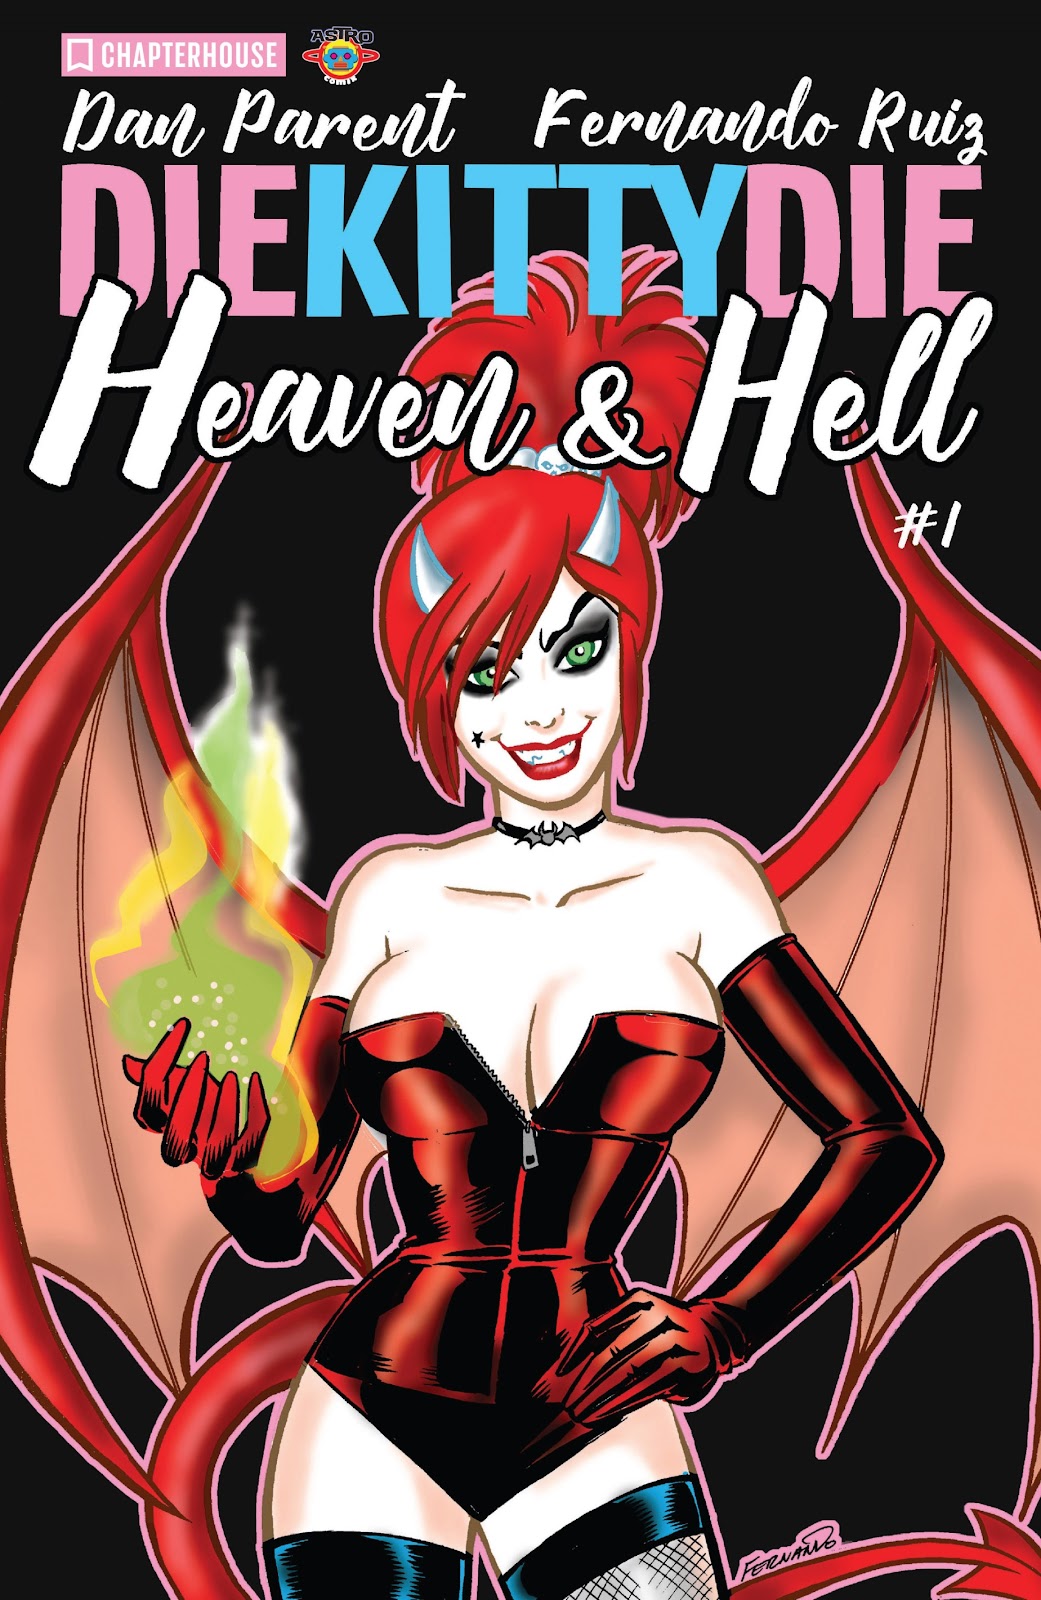 Die Kitty Die! Heaven & Hell issue 1 - Page 1